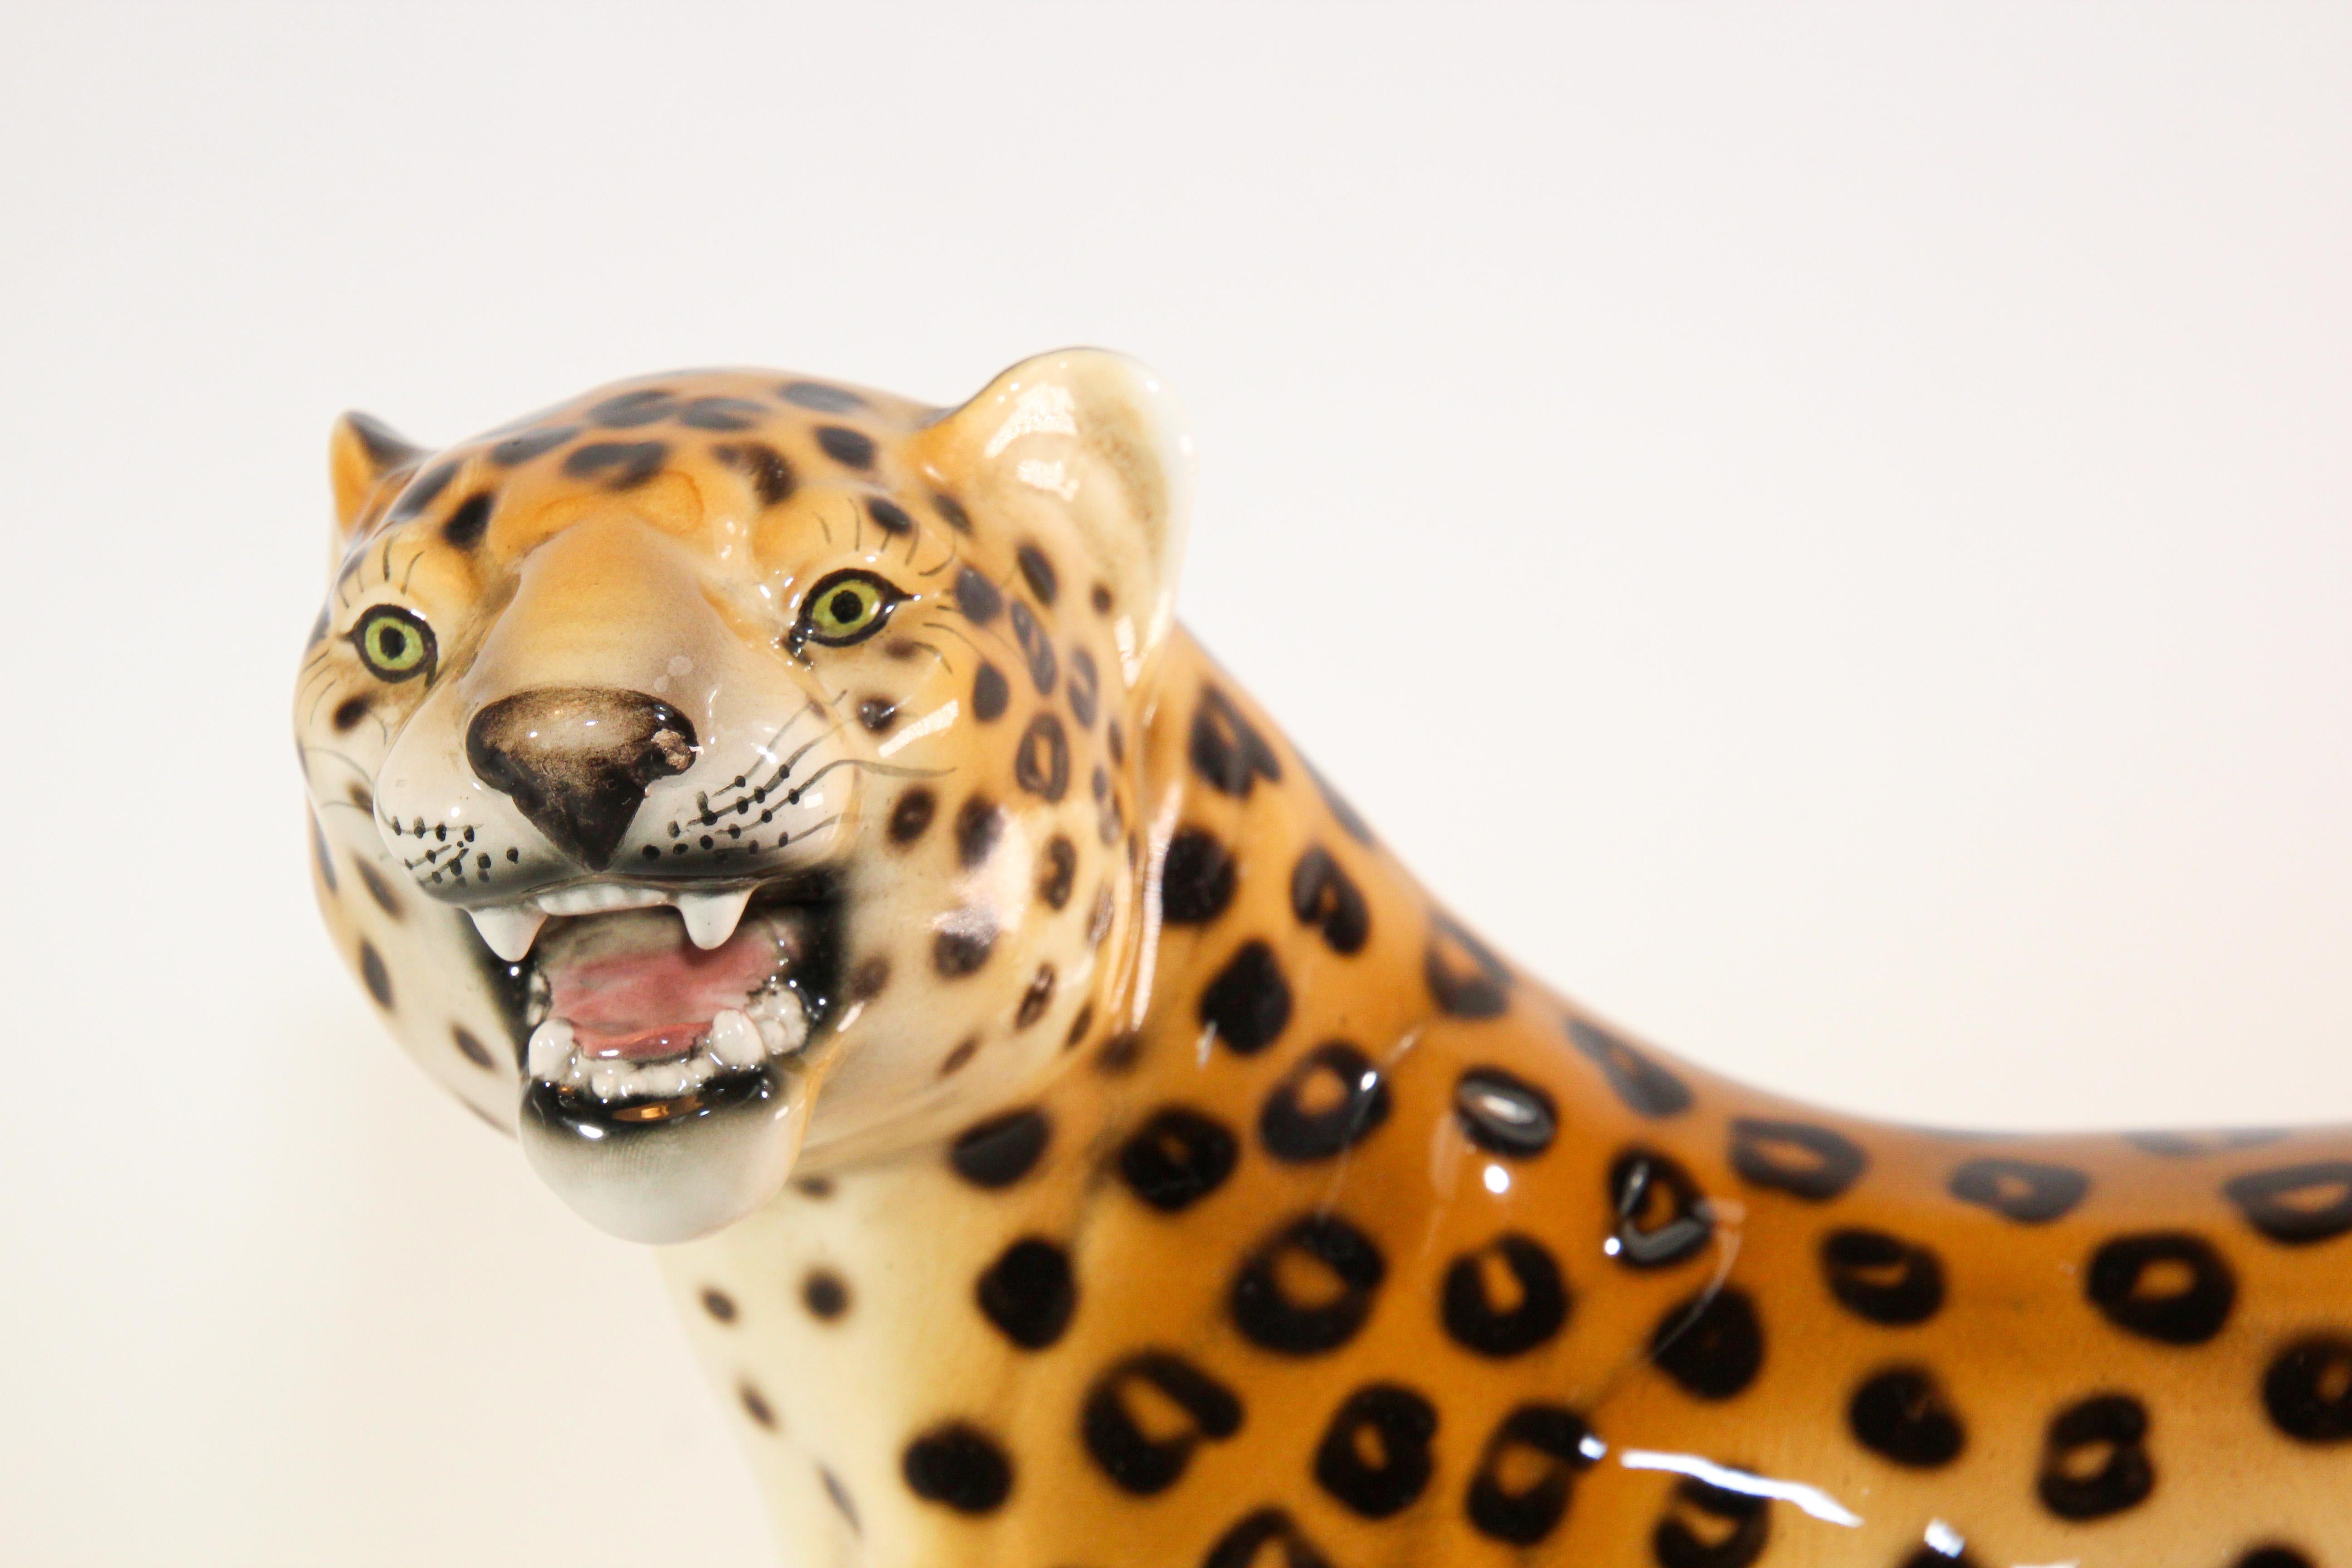 Sculpture italienne vintage en porcelaine du milieu du siècle dernier représentant un léopard, à rayures moyennes, avec la bouche ouverte.
Le léopard debout en porcelaine émaillée italienne peinte à la main.
Sculpture de léopard en céramique du